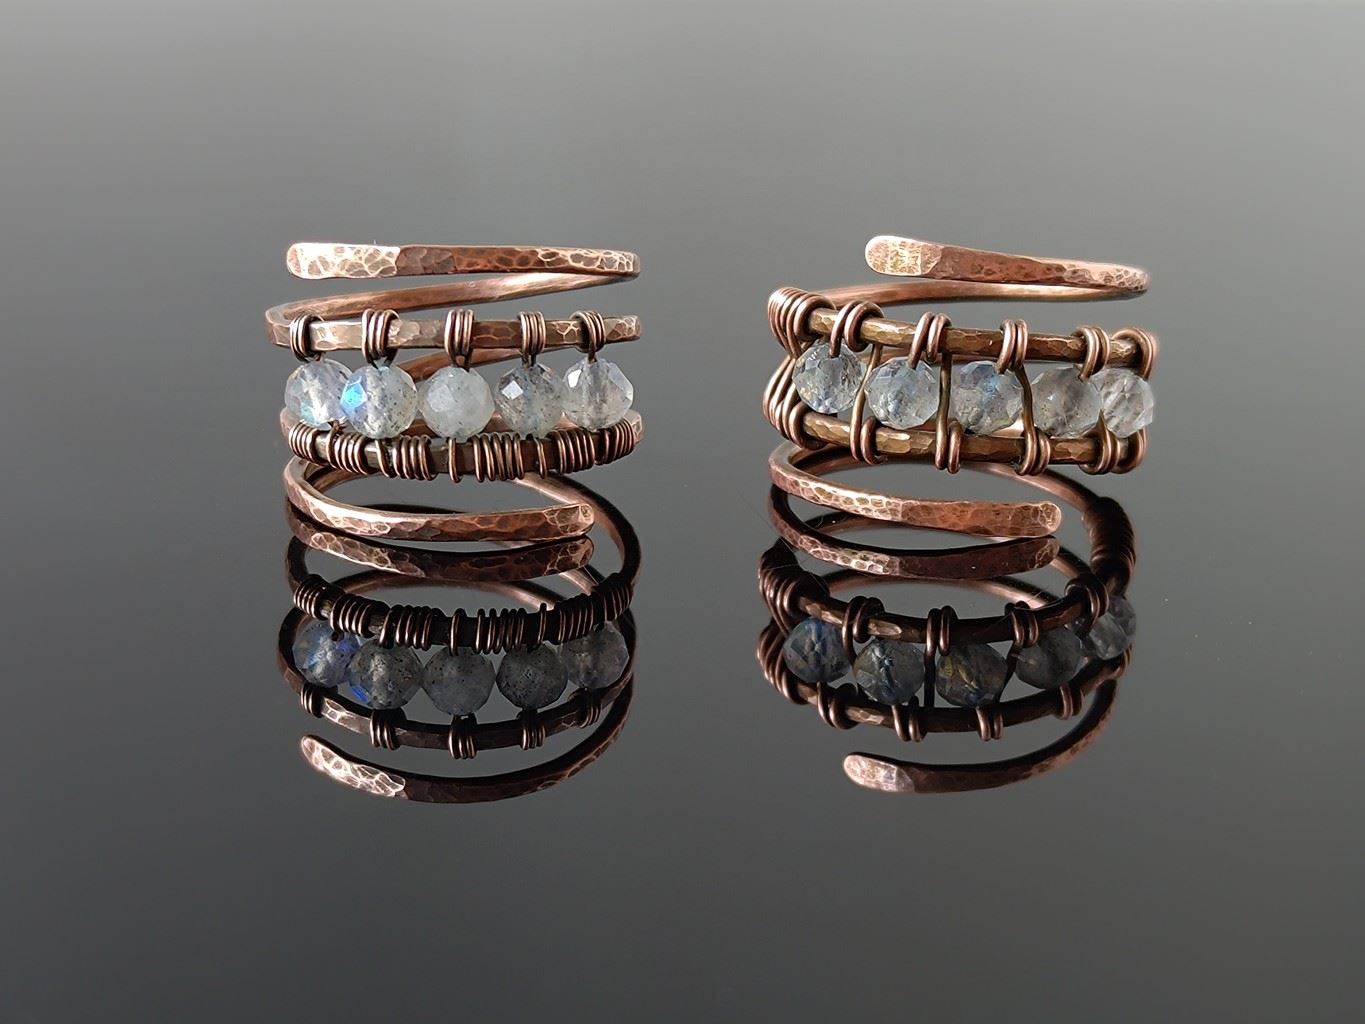 Měděný prsten s labradoritem, velikost 53mm * Copper ring with Labradorite beads, ring size 53mm